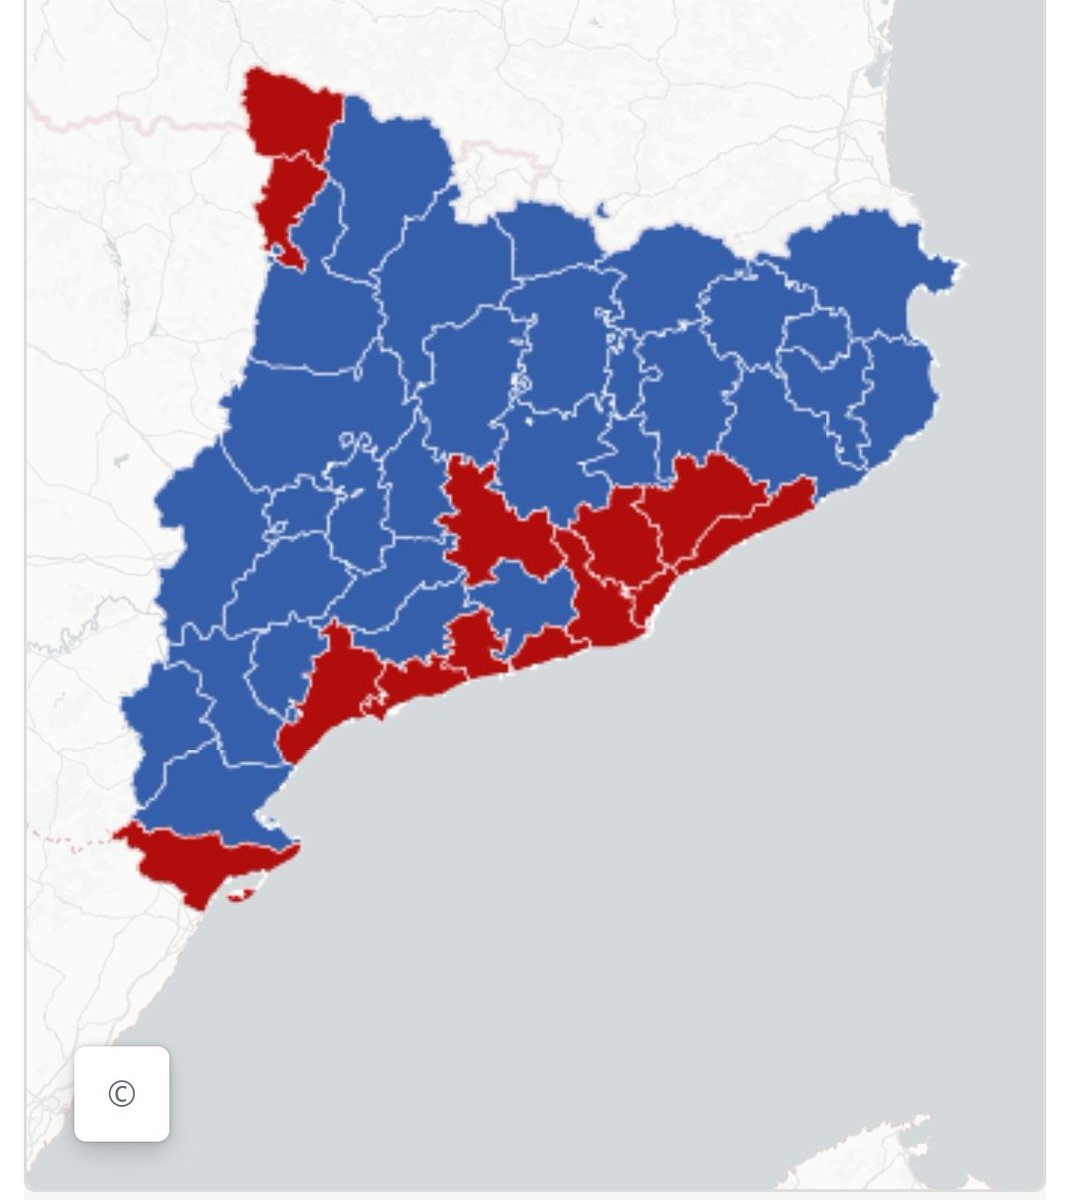 #12M
En blau:
Catalunya catalana
En vermell:
Catalunya espanyola.
Els hi regalem?